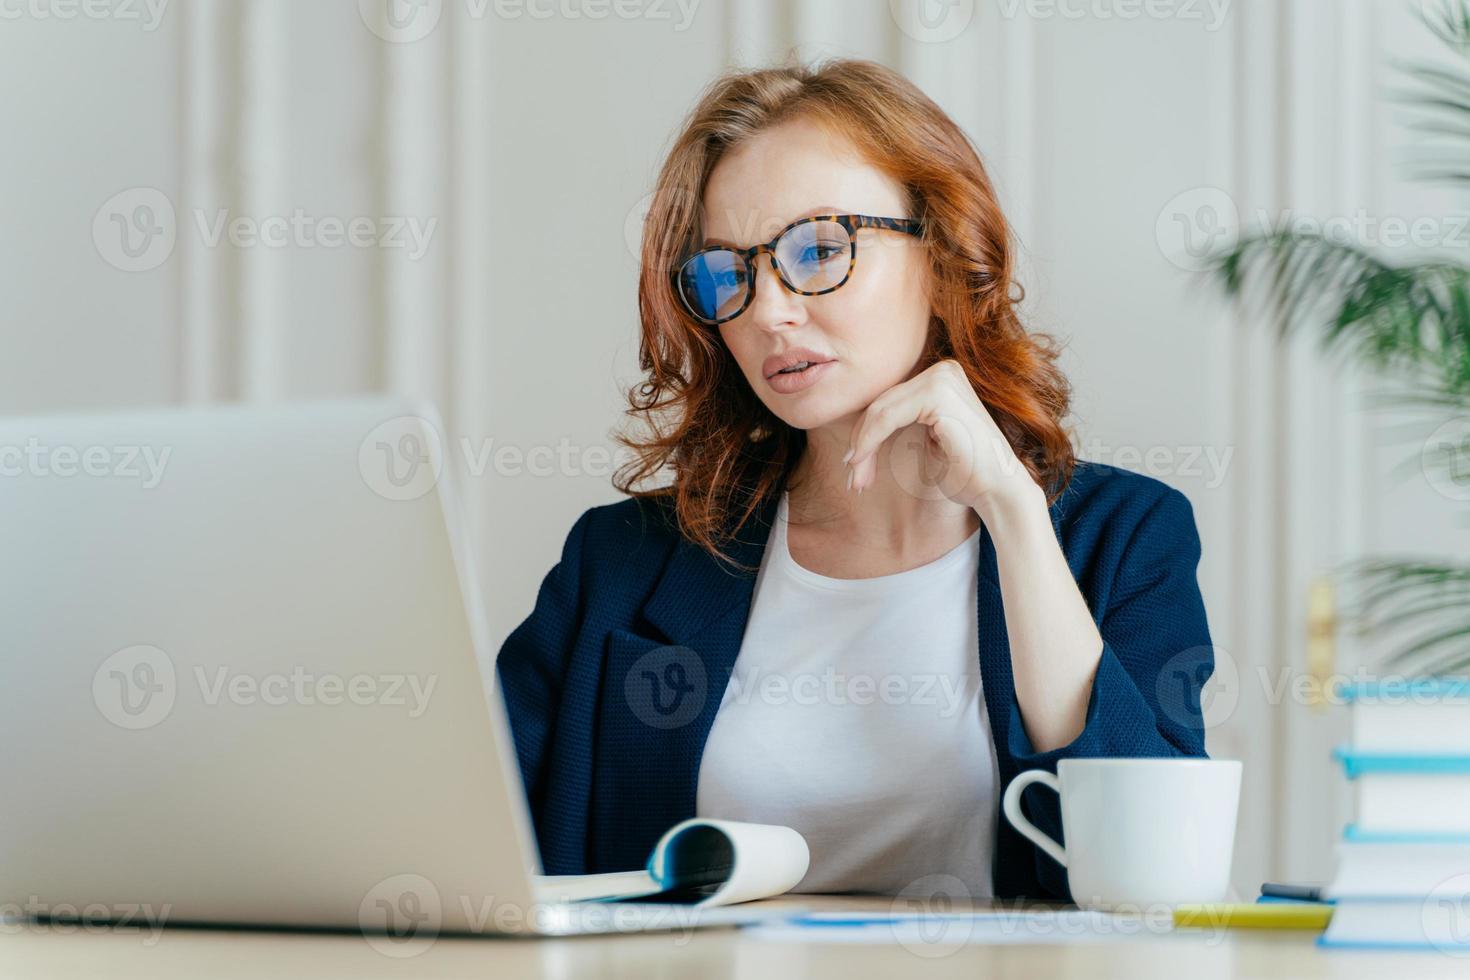 foto de empresária atraente concentrada no monitor do computador portátil, tem um olhar sério focado, usa óculos ópticos para correção da visão, assiste a vídeos de treinamento, bebe bebidas quentes